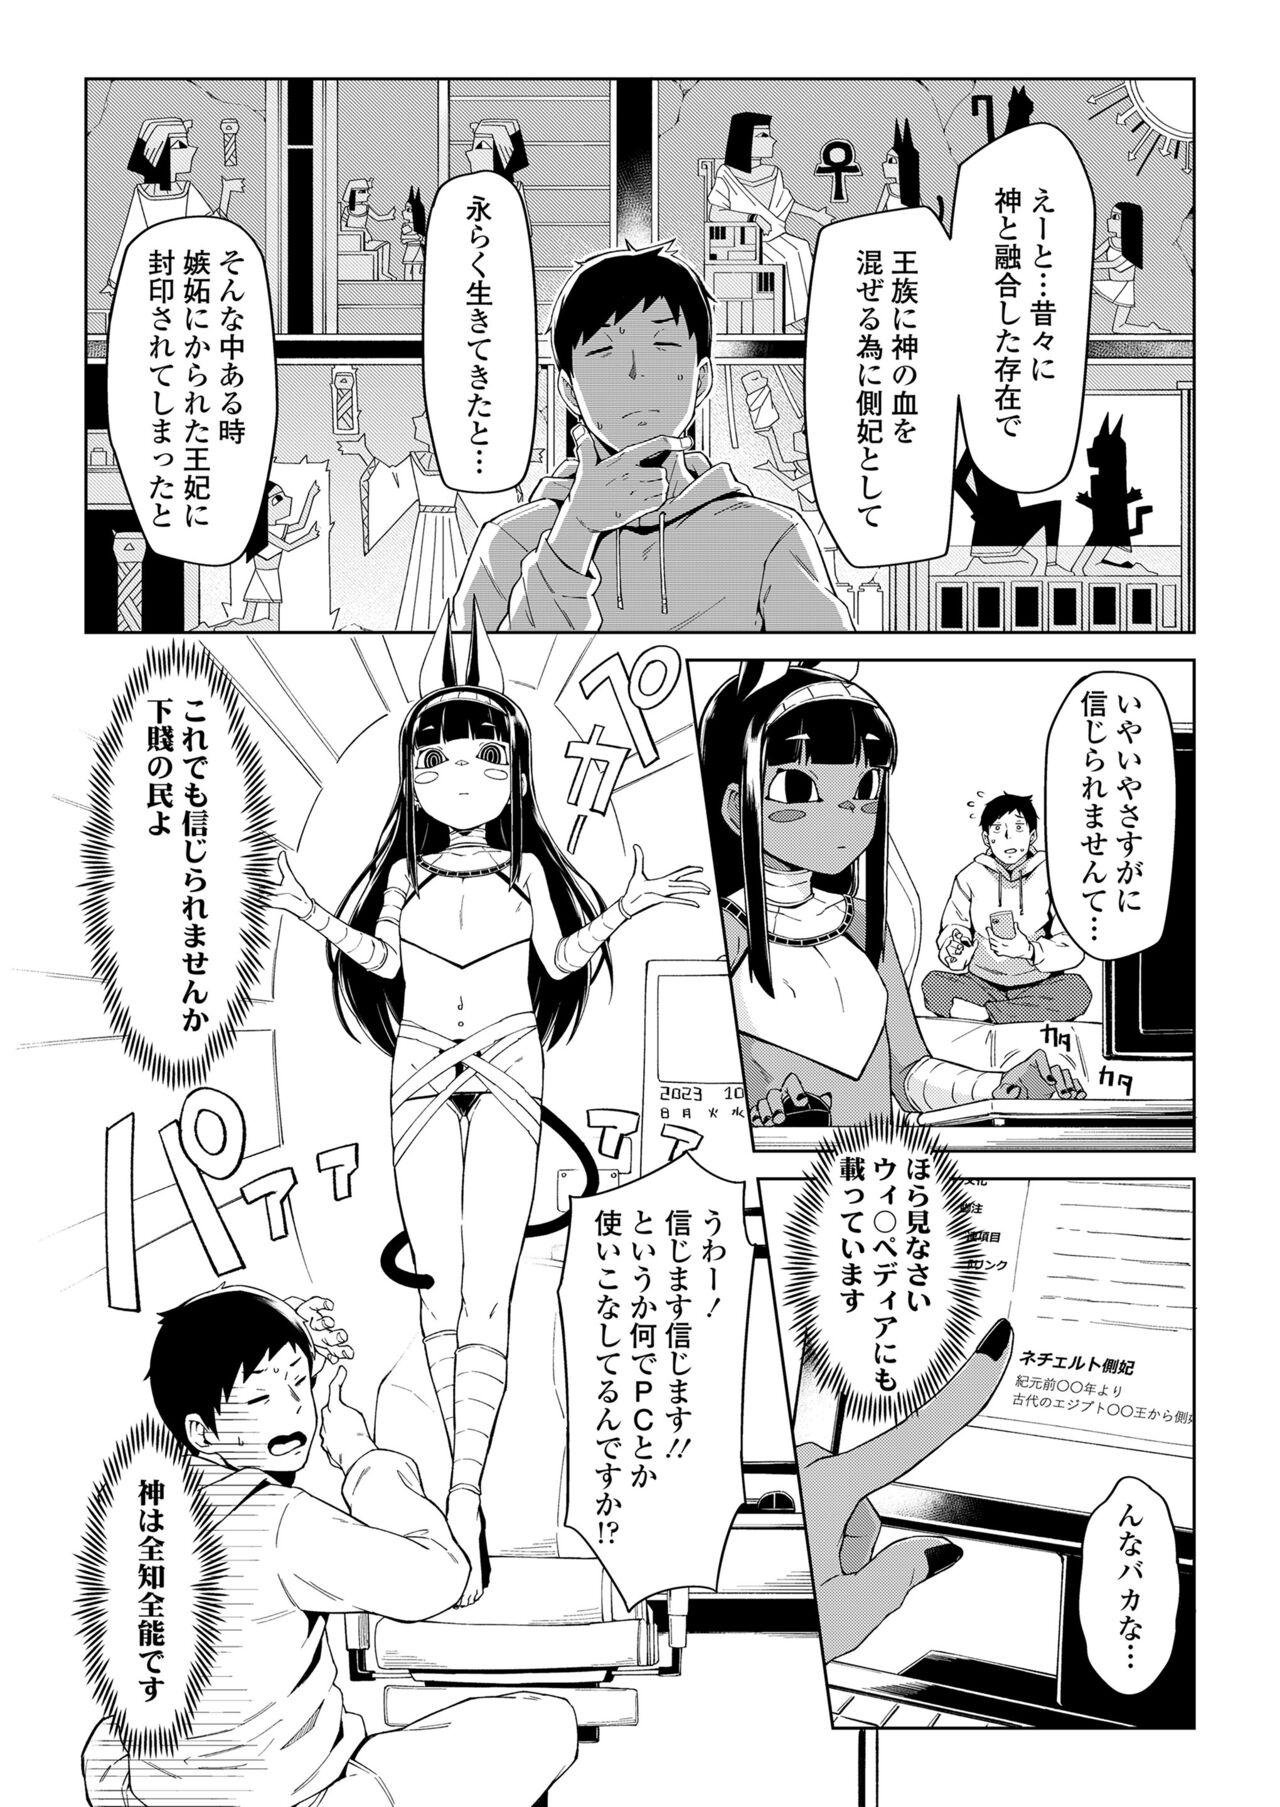 Leaked Towako Oboro Emaki 13 Culos - Page 4